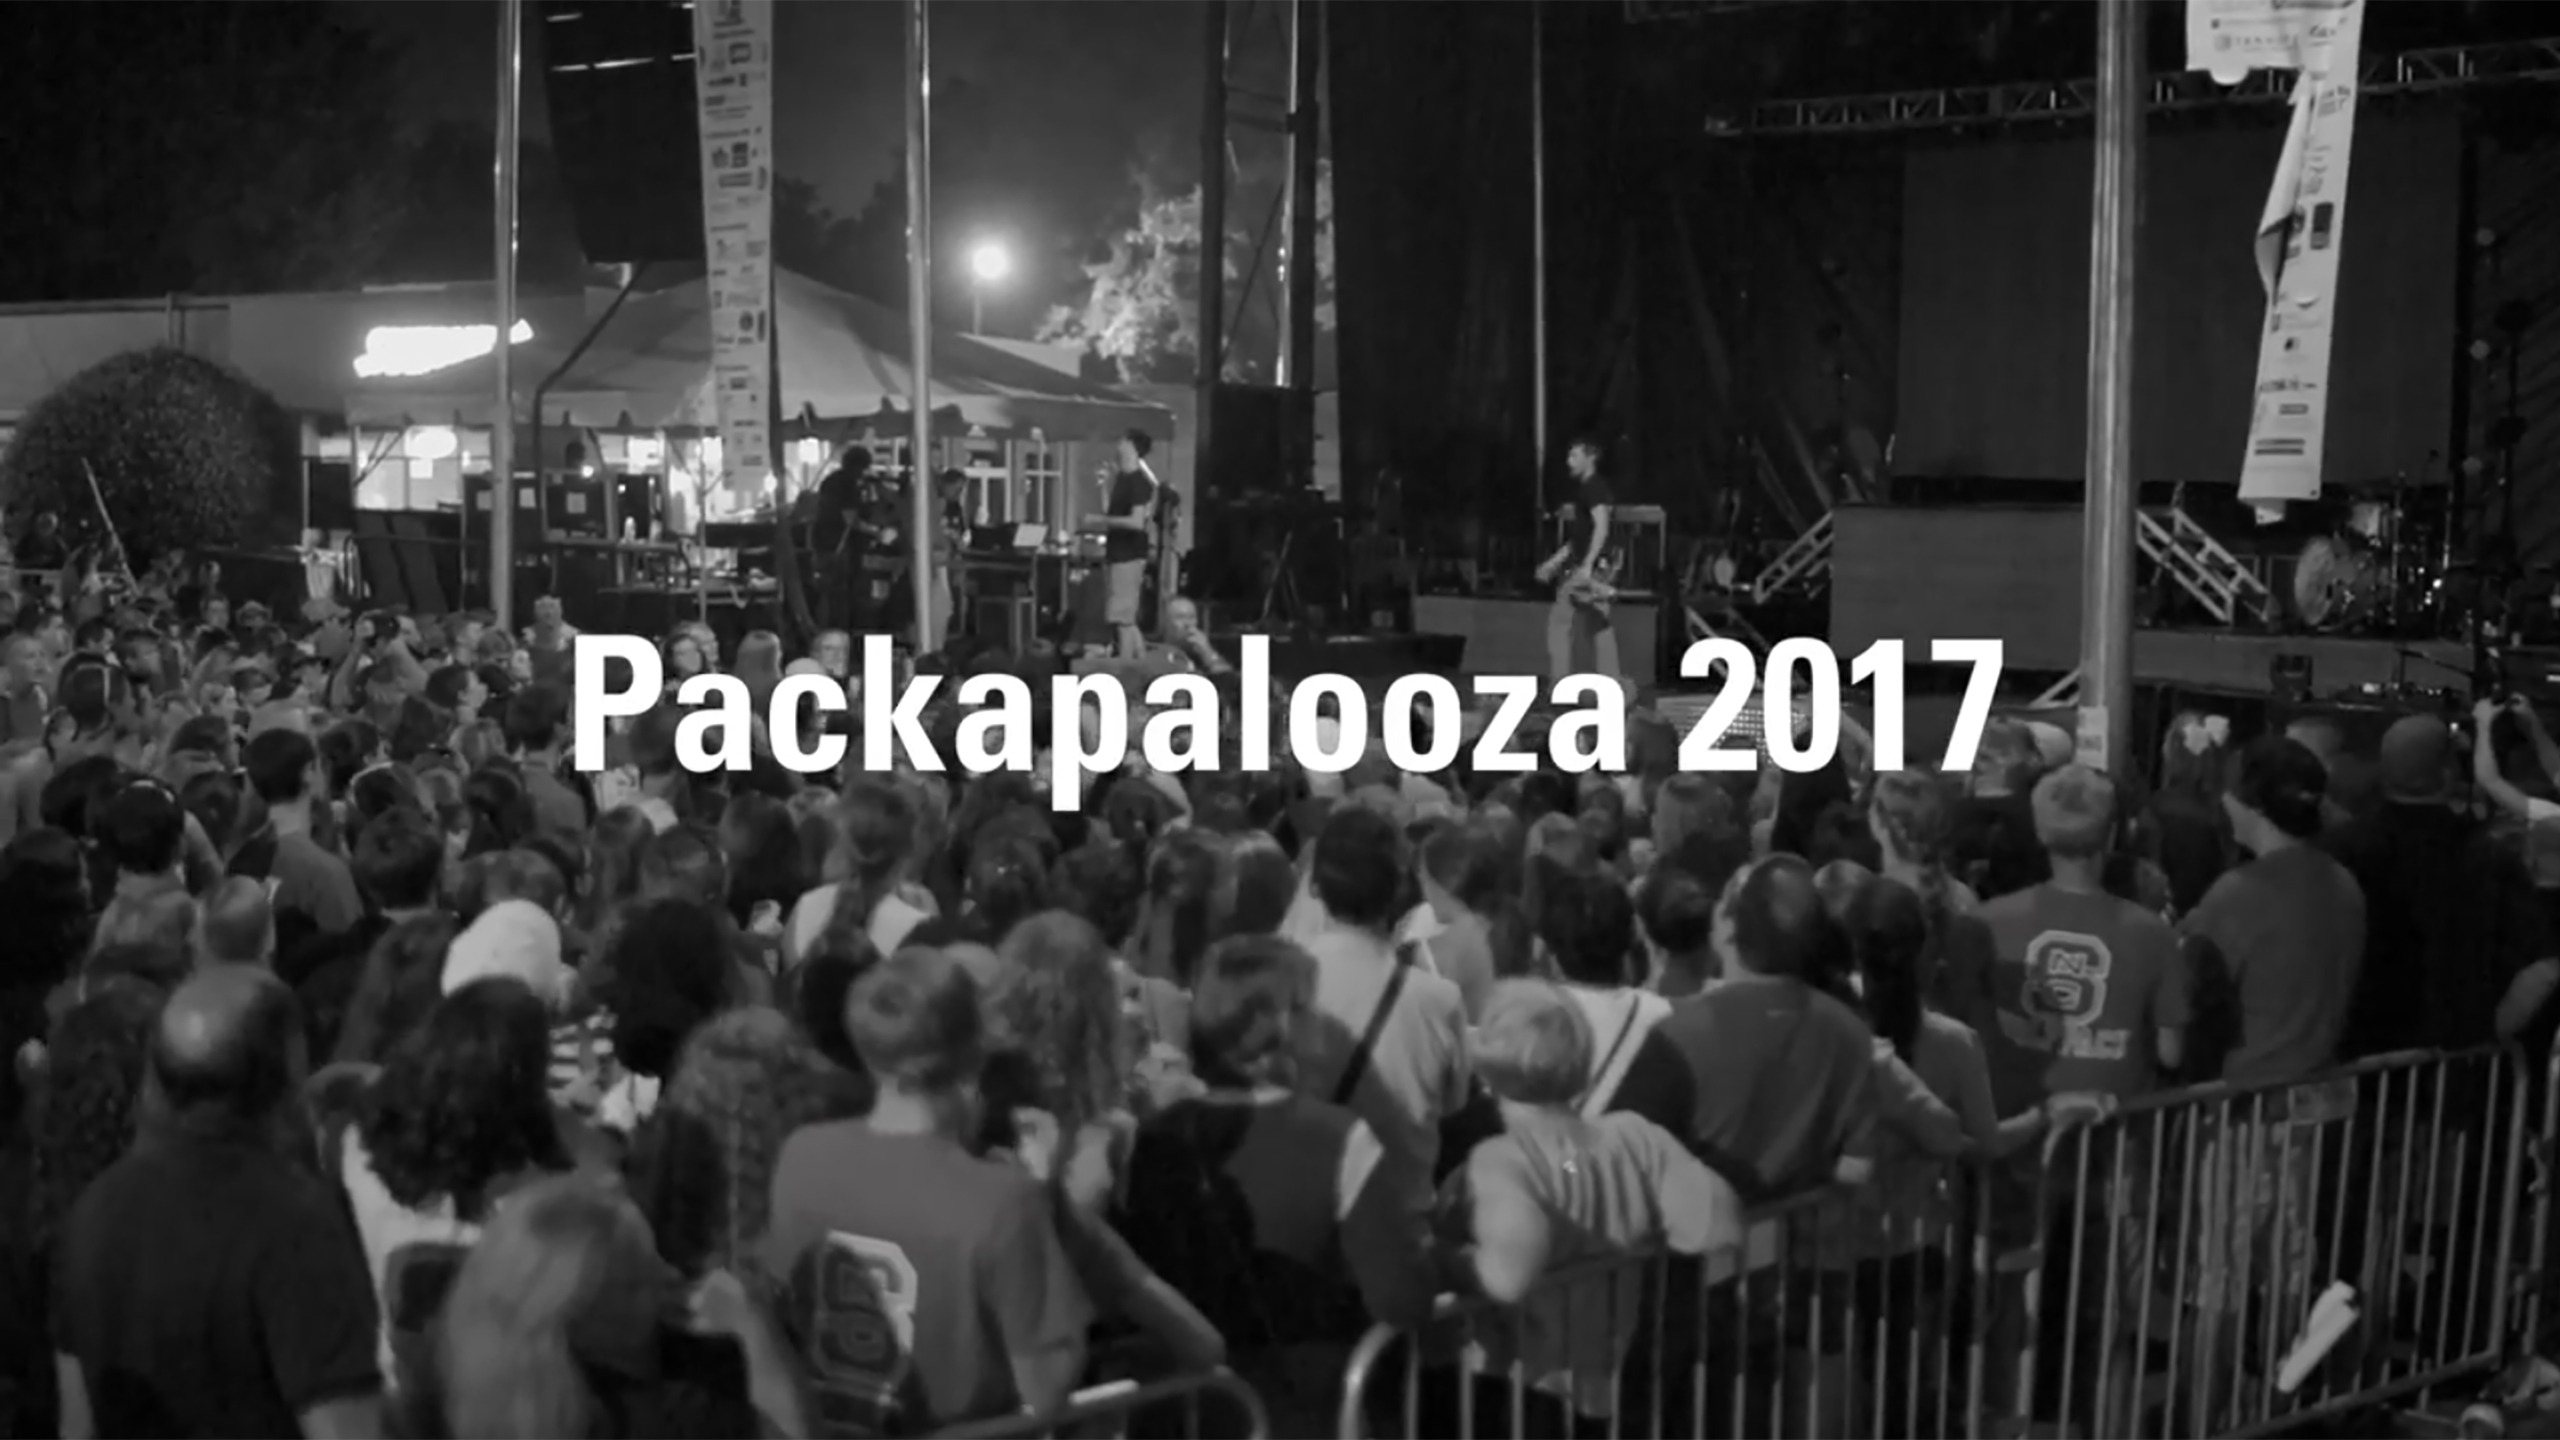 Packapalooza 2017 | August 19 | NC State University